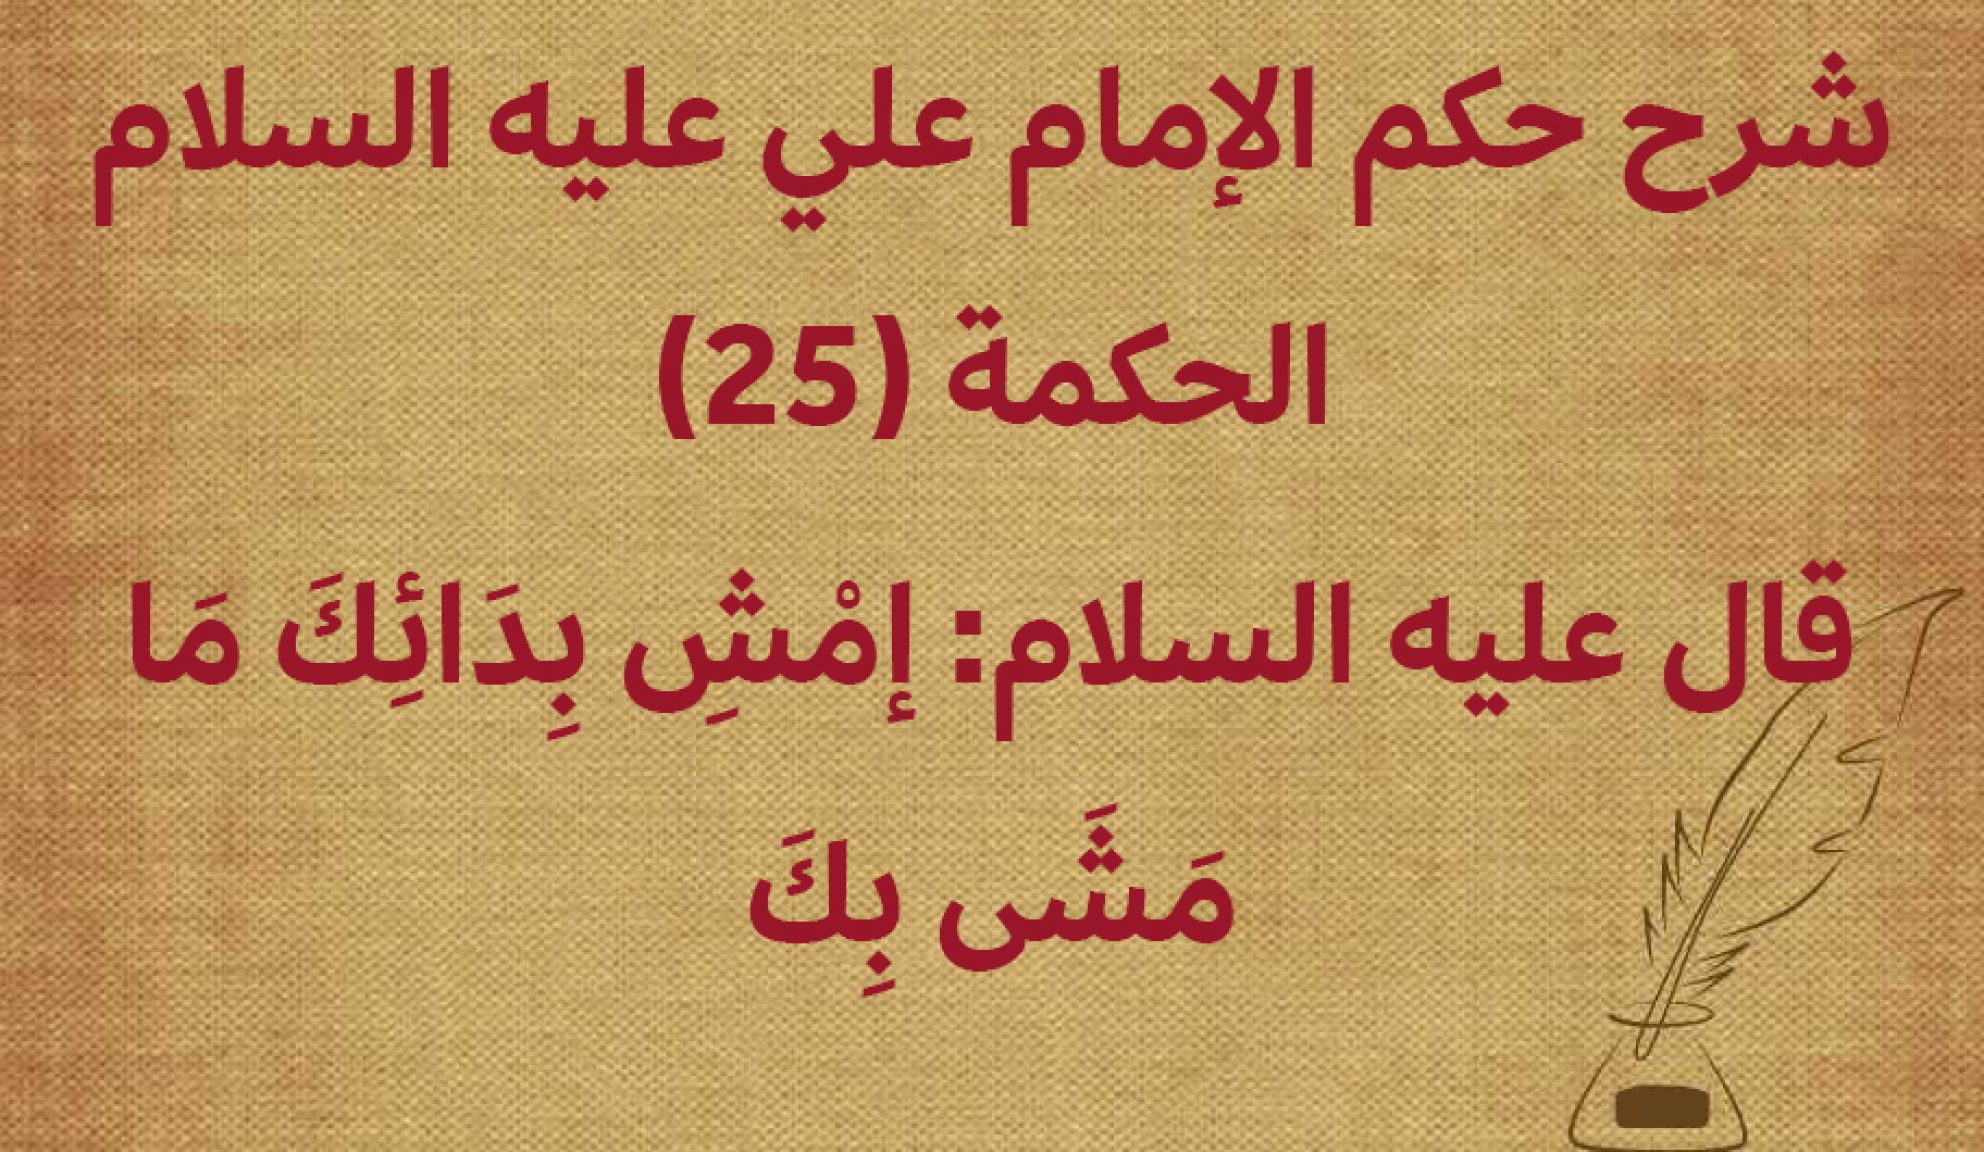 شرح حكم الإمام علي عليه السلام الحكمة (25) قال عليه السلام: إمْشِ بِدَائِكَ مَا مَشَى بِكَ